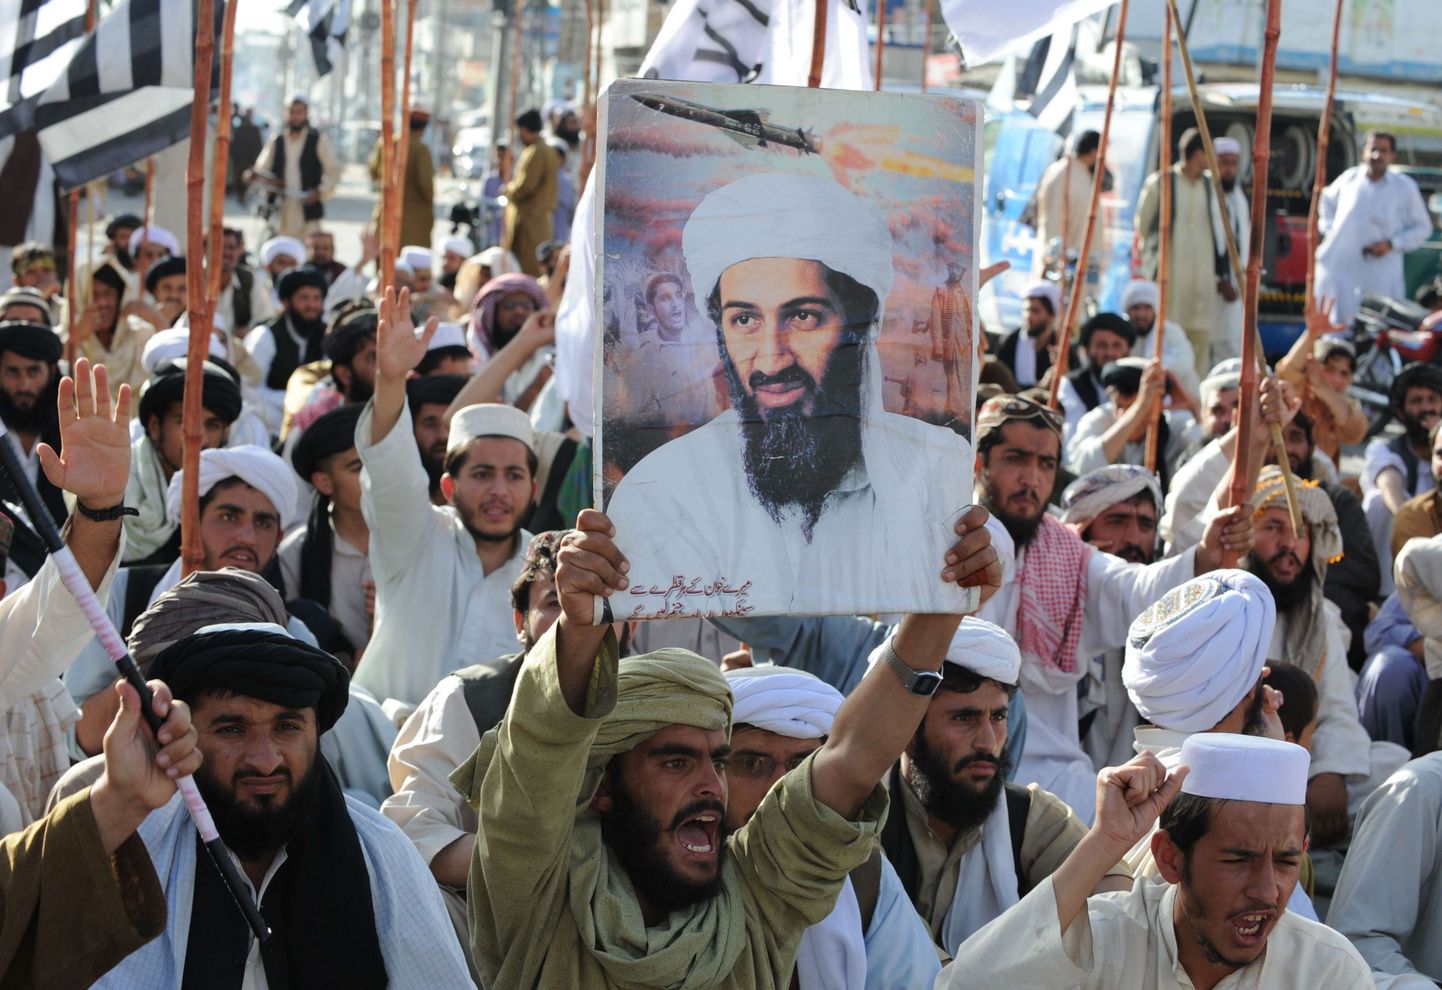 Ühendriikides kardetakse Osama bin Ladeni tapmise järel islamiäärmuslaste rünnakuid. Pildil avaldavad USA vastu meelt Pakistani radikaalse Jamiat Ulema-i-Islam-Nazaryati (JUI-N) toetajad.